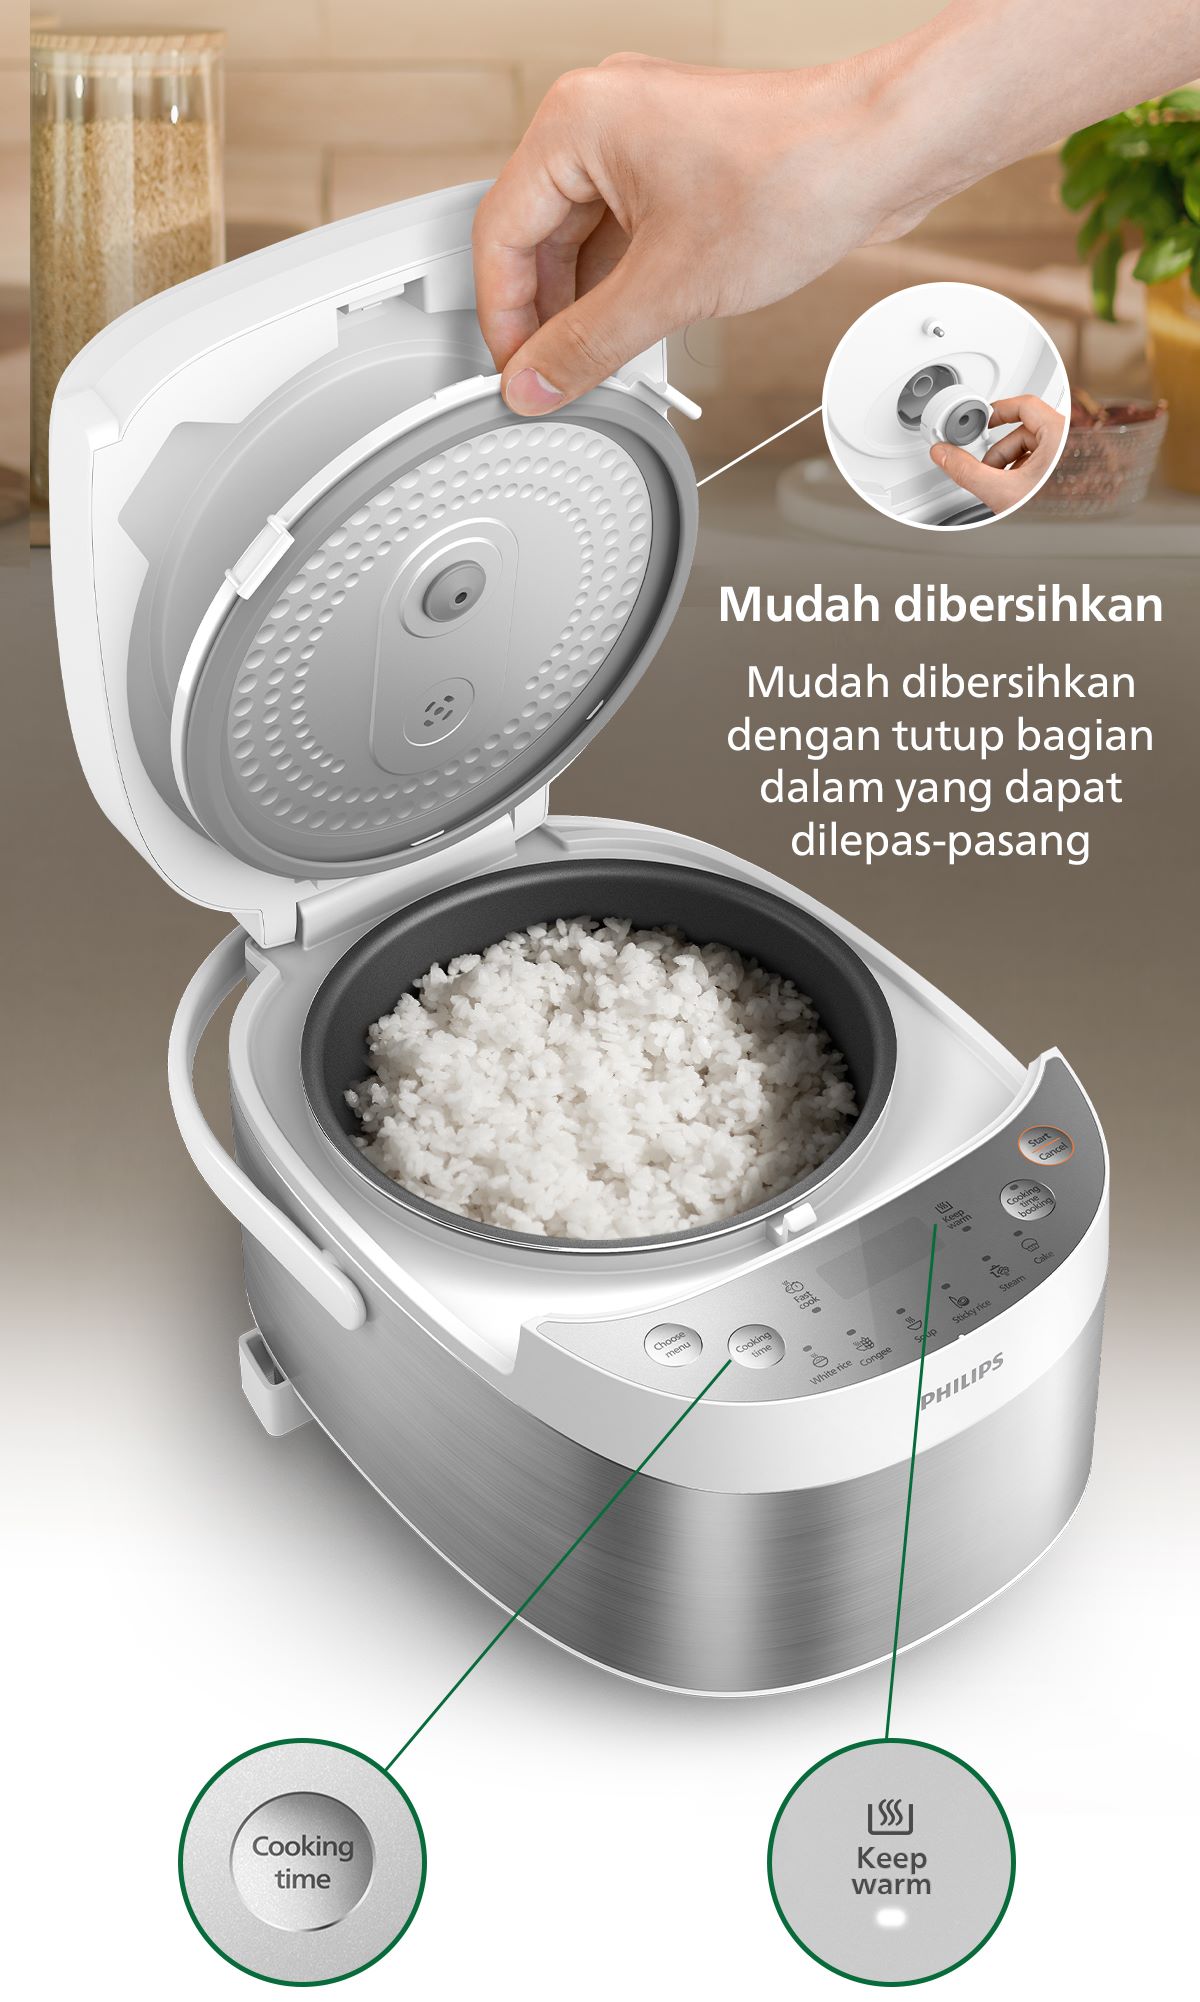 Promo Philips 0.85L Digital Mini Rice Cooker HD3170/33 - White, Inner Pot  Anti Lengket Diskon 26% di Seller Philips Official Store - Gudang Blibli